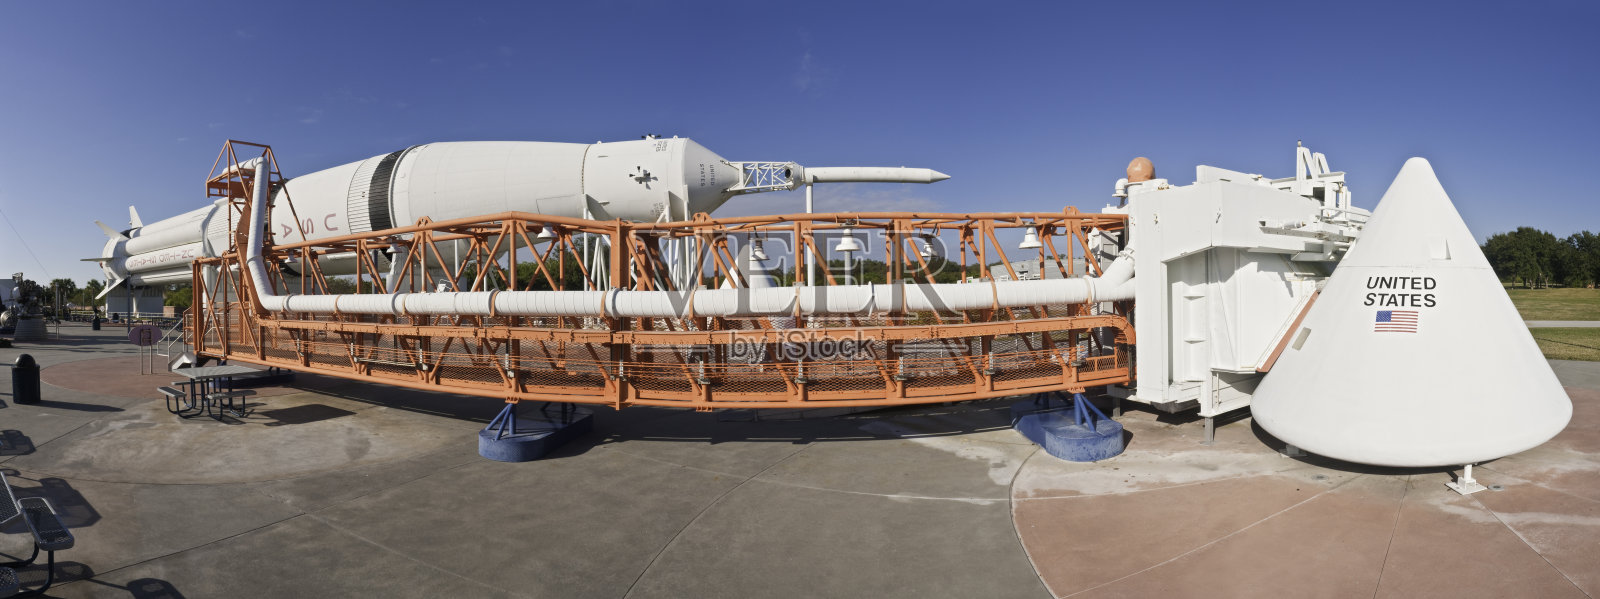 美国佛罗里达州卡纳维拉尔角，阿波罗火箭舱全景图照片摄影图片